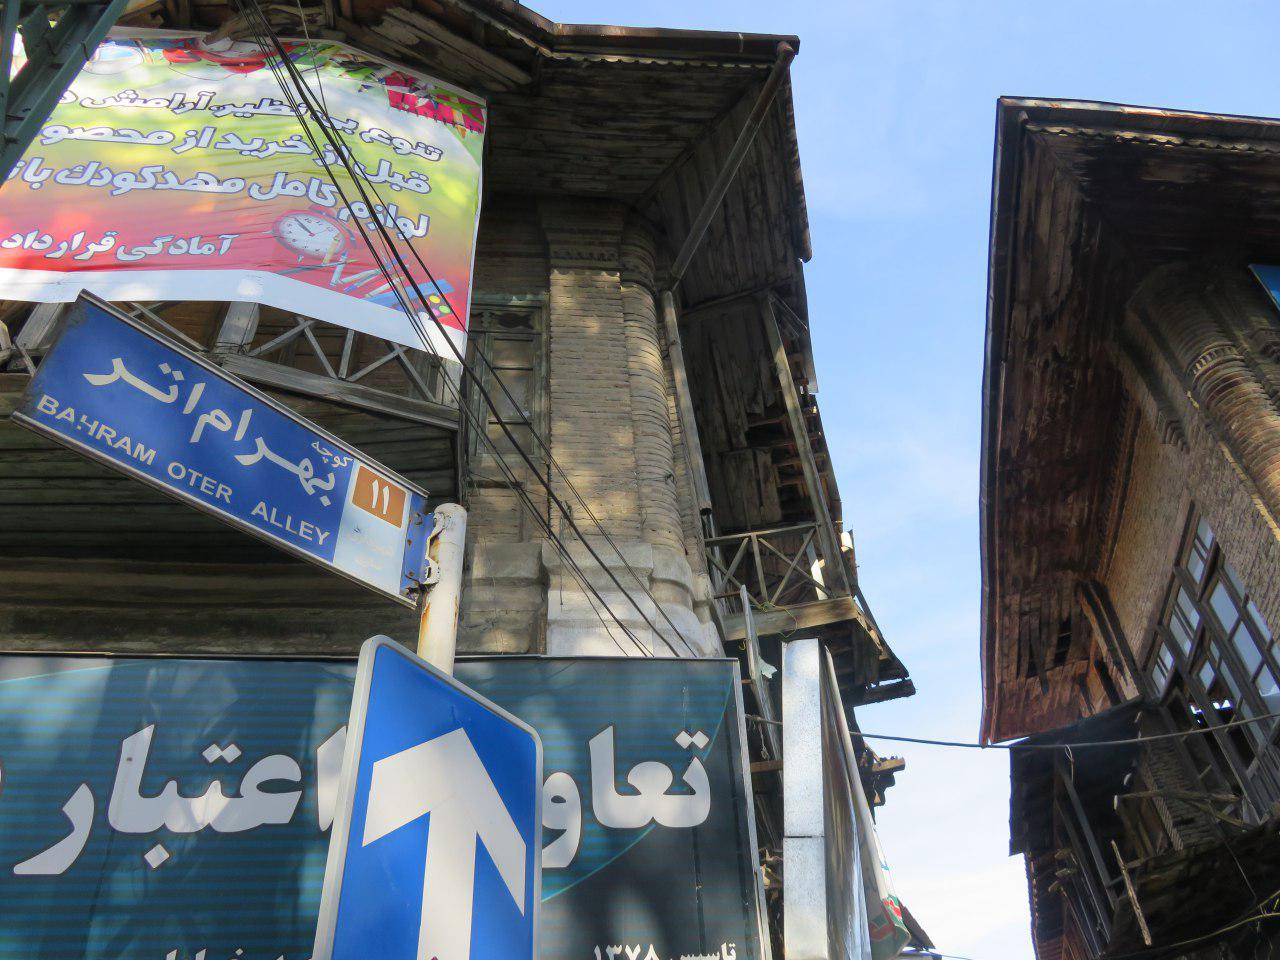 تصاویری از تخریب اماکن تاریخی و گردشگری ساری	